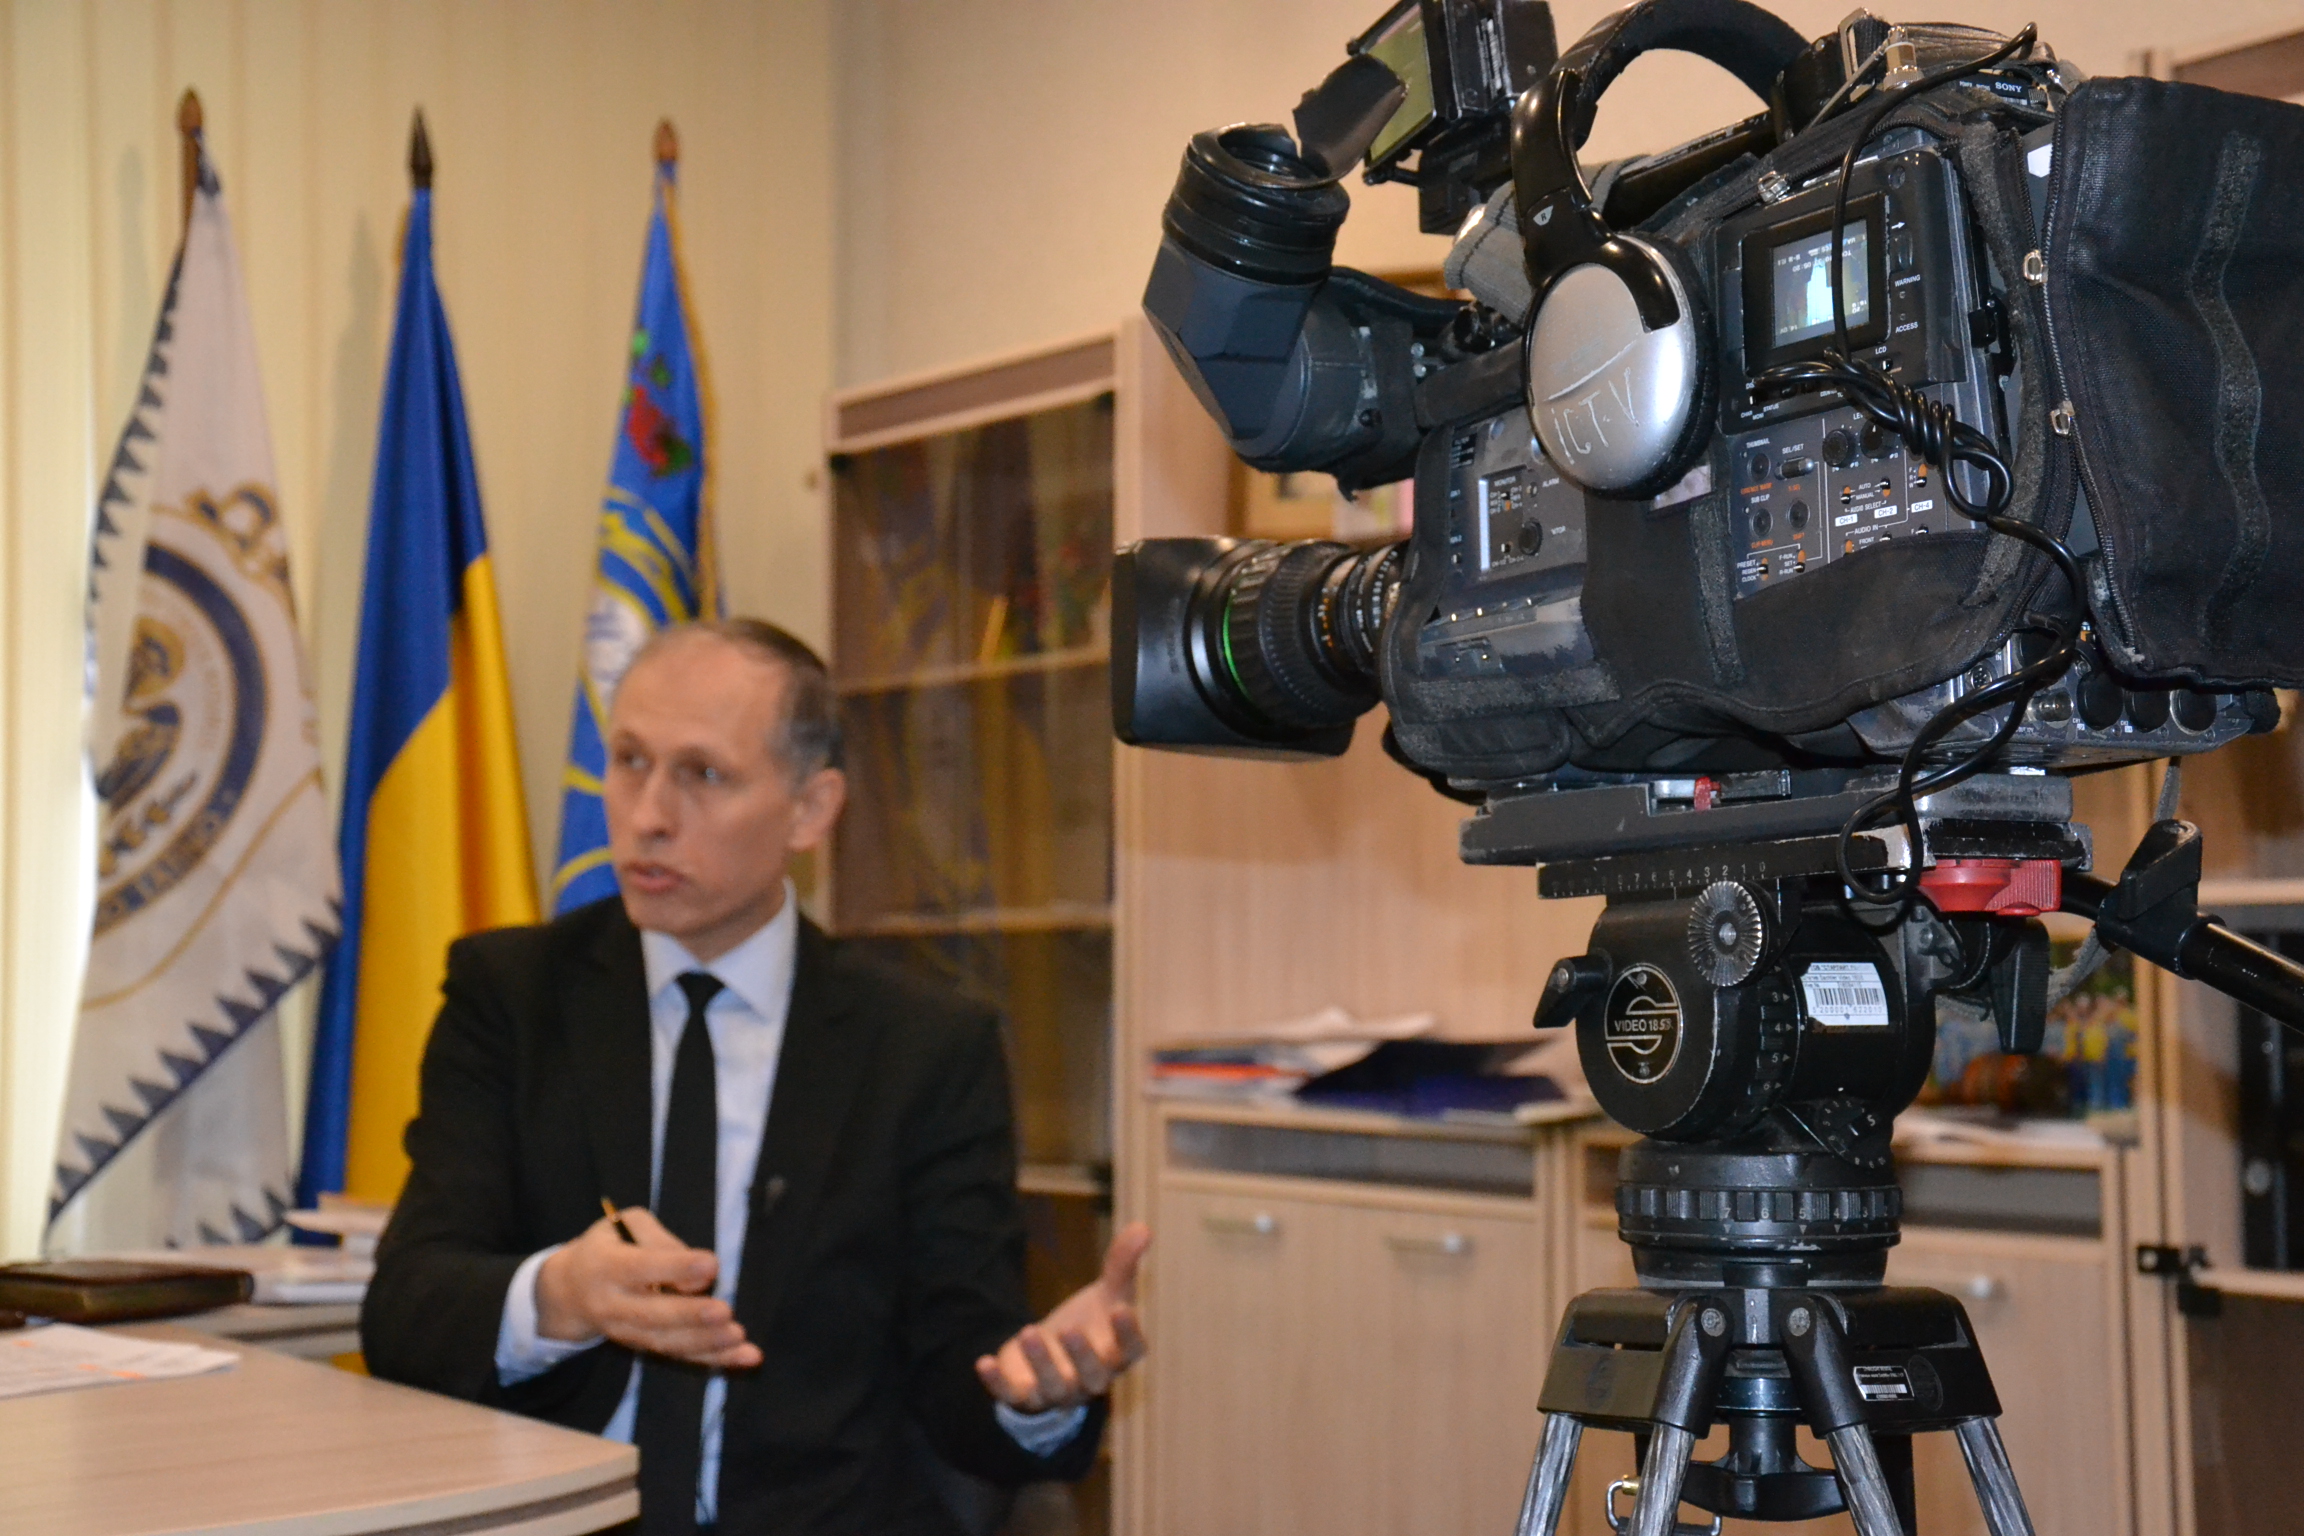 Нотаріальна палата України застерігає про негативні наслідки оформлення спадщини органами місцевого самоврядування селищ міського типу - коментар телеканалу ICTV.
